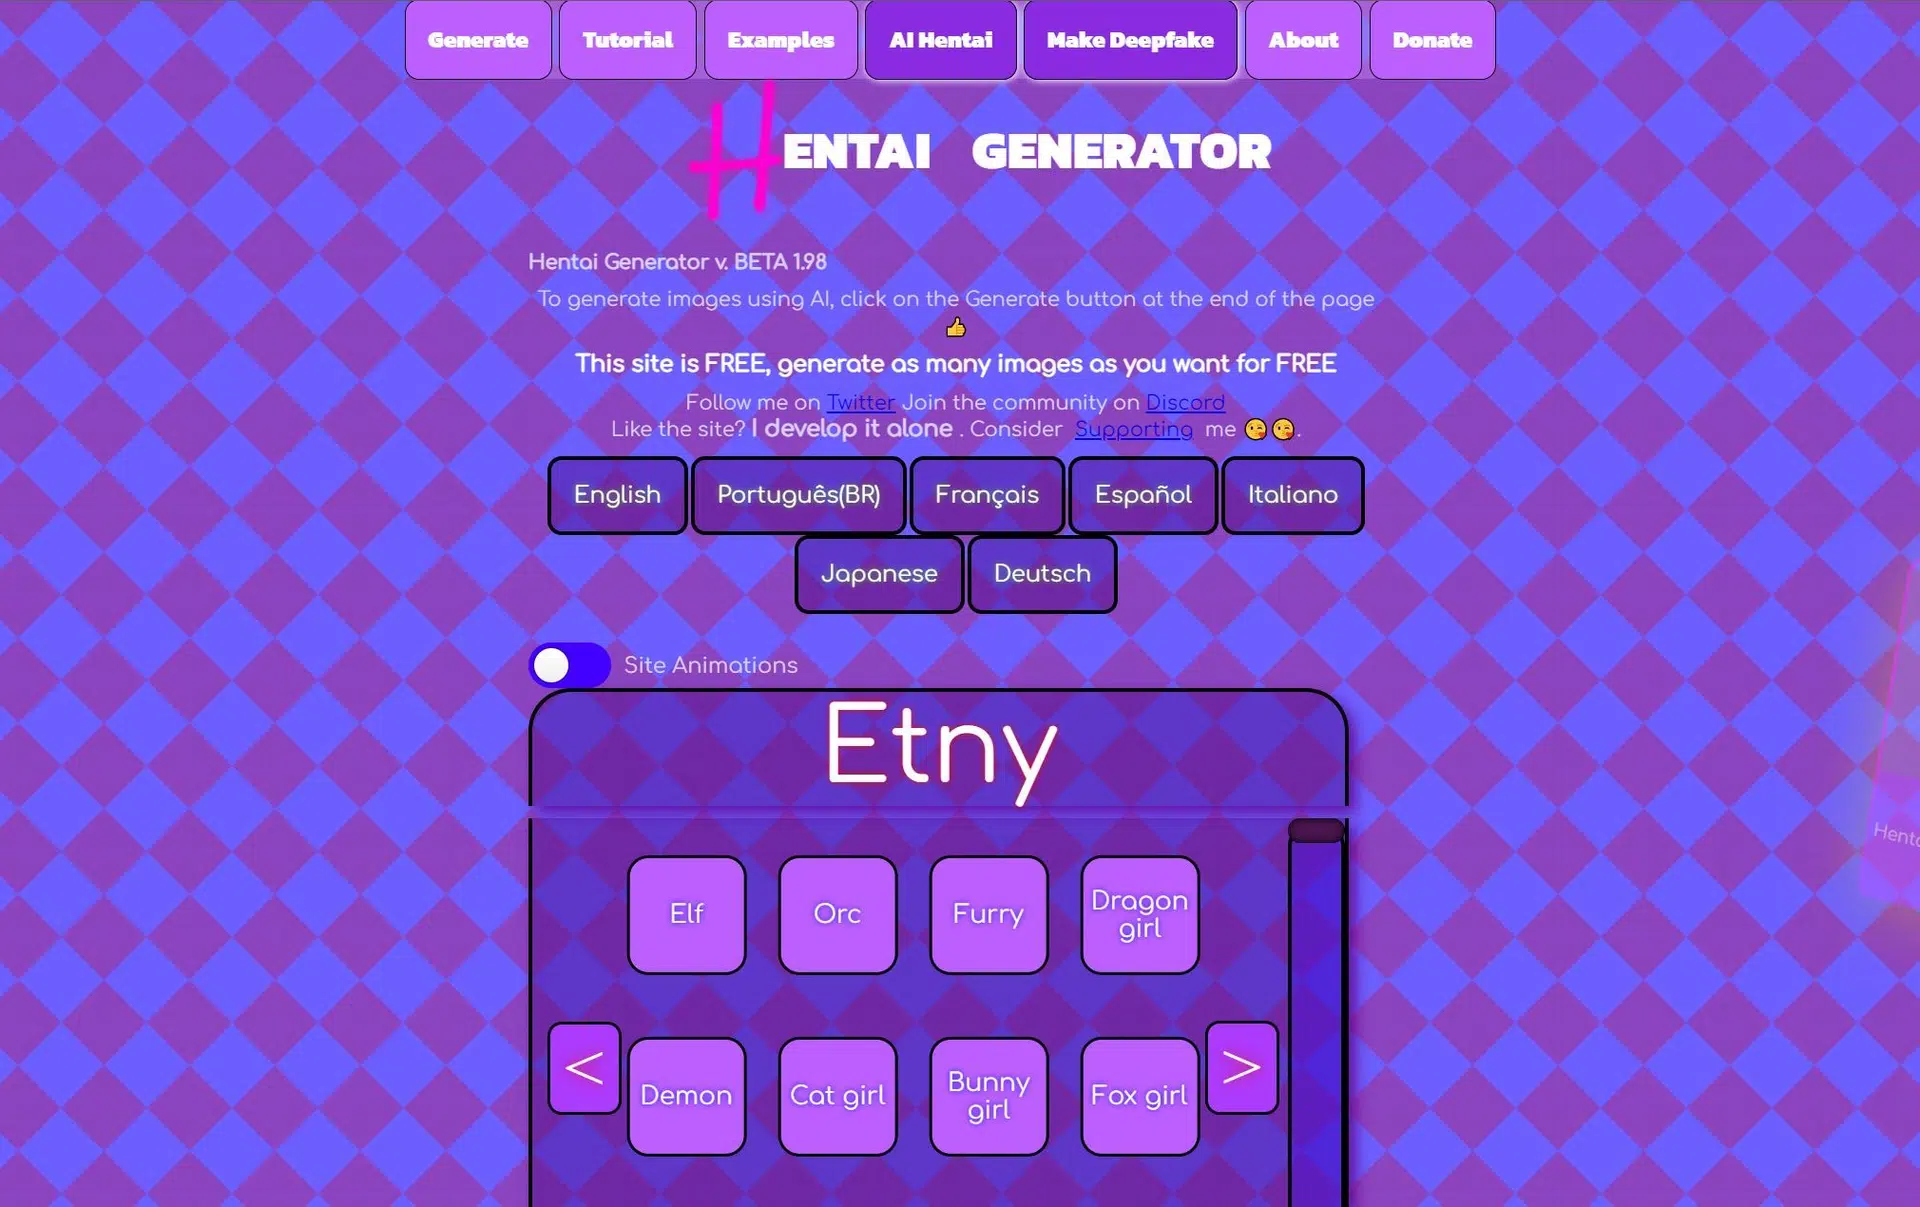 Hentai Generatorwebsite picture